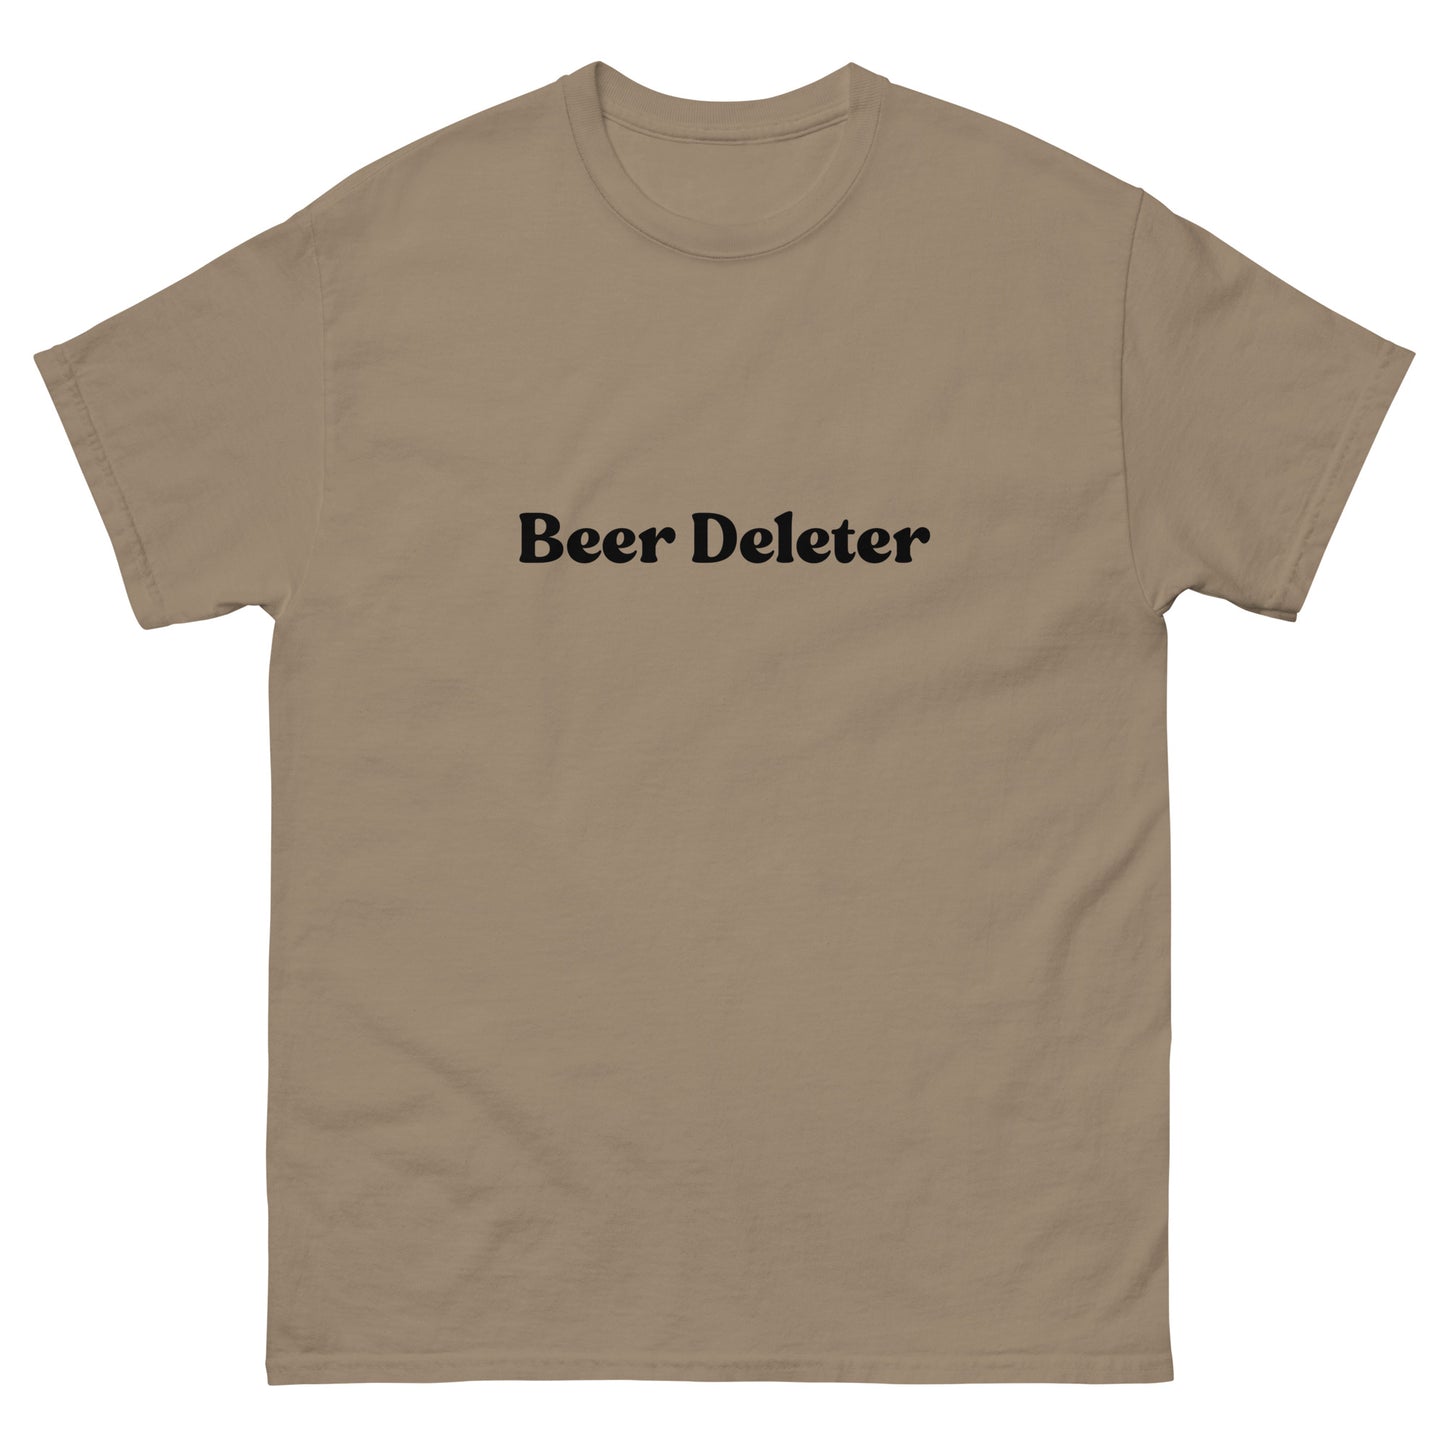 Beer Deleter T-Shirt